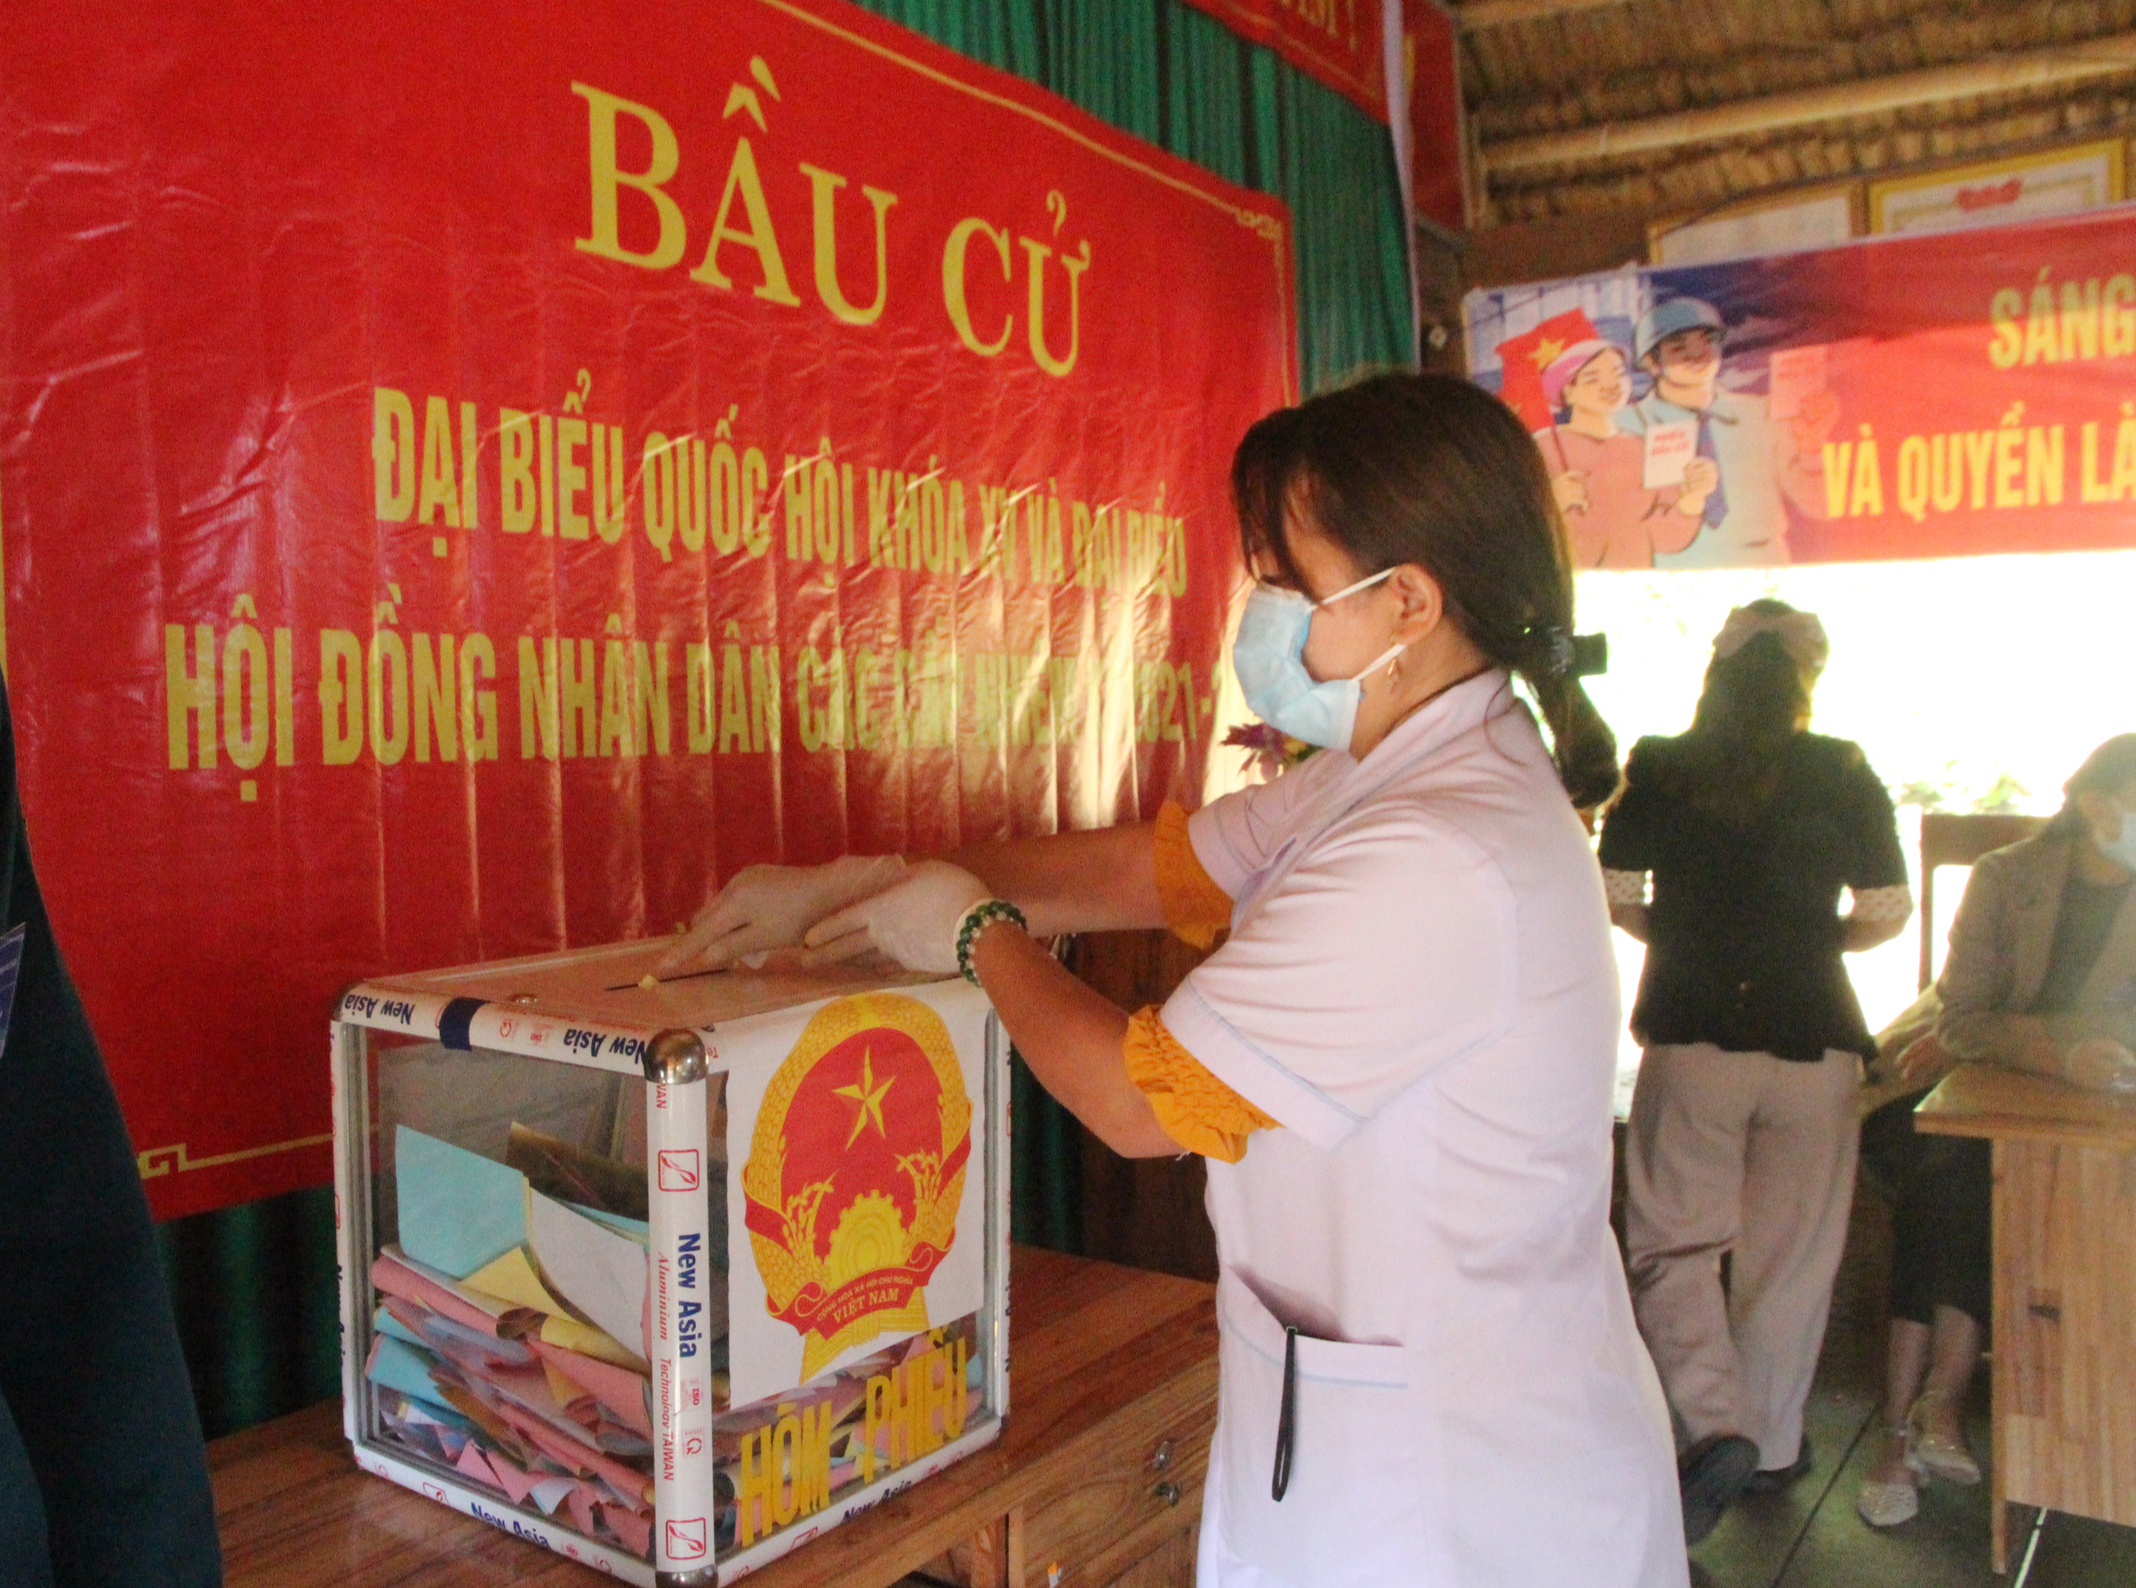 Cử tri vùng biên giới Quảng Nam hân hoan đi bầu cử sớm - Ảnh 1.